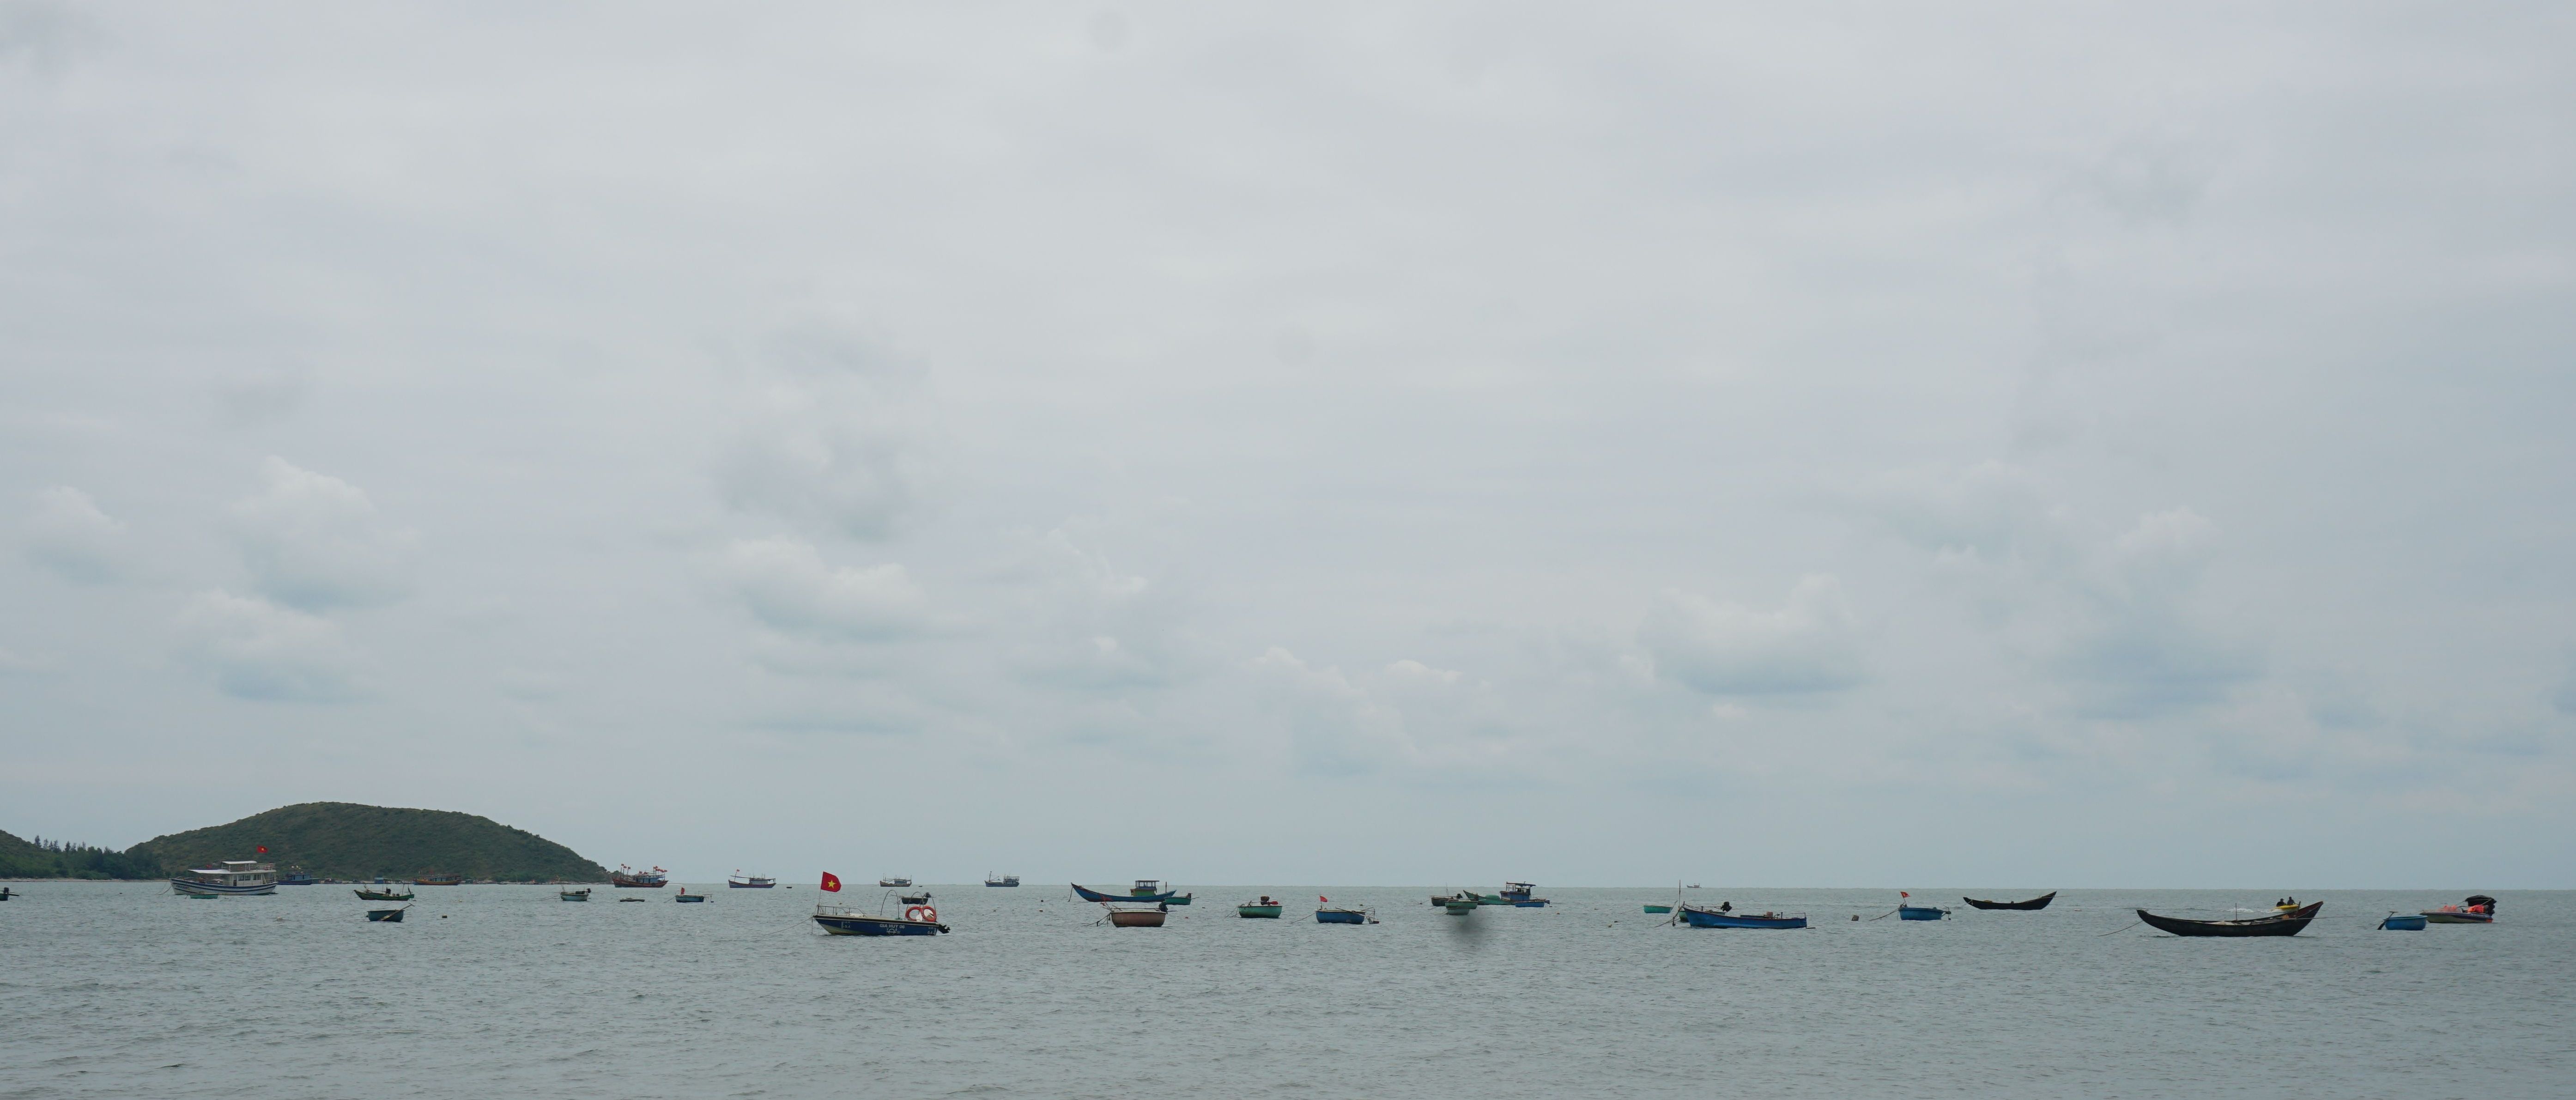 Quảng Trạch: Một ngư dân nghi mất tích khi đi câu mực trên biển